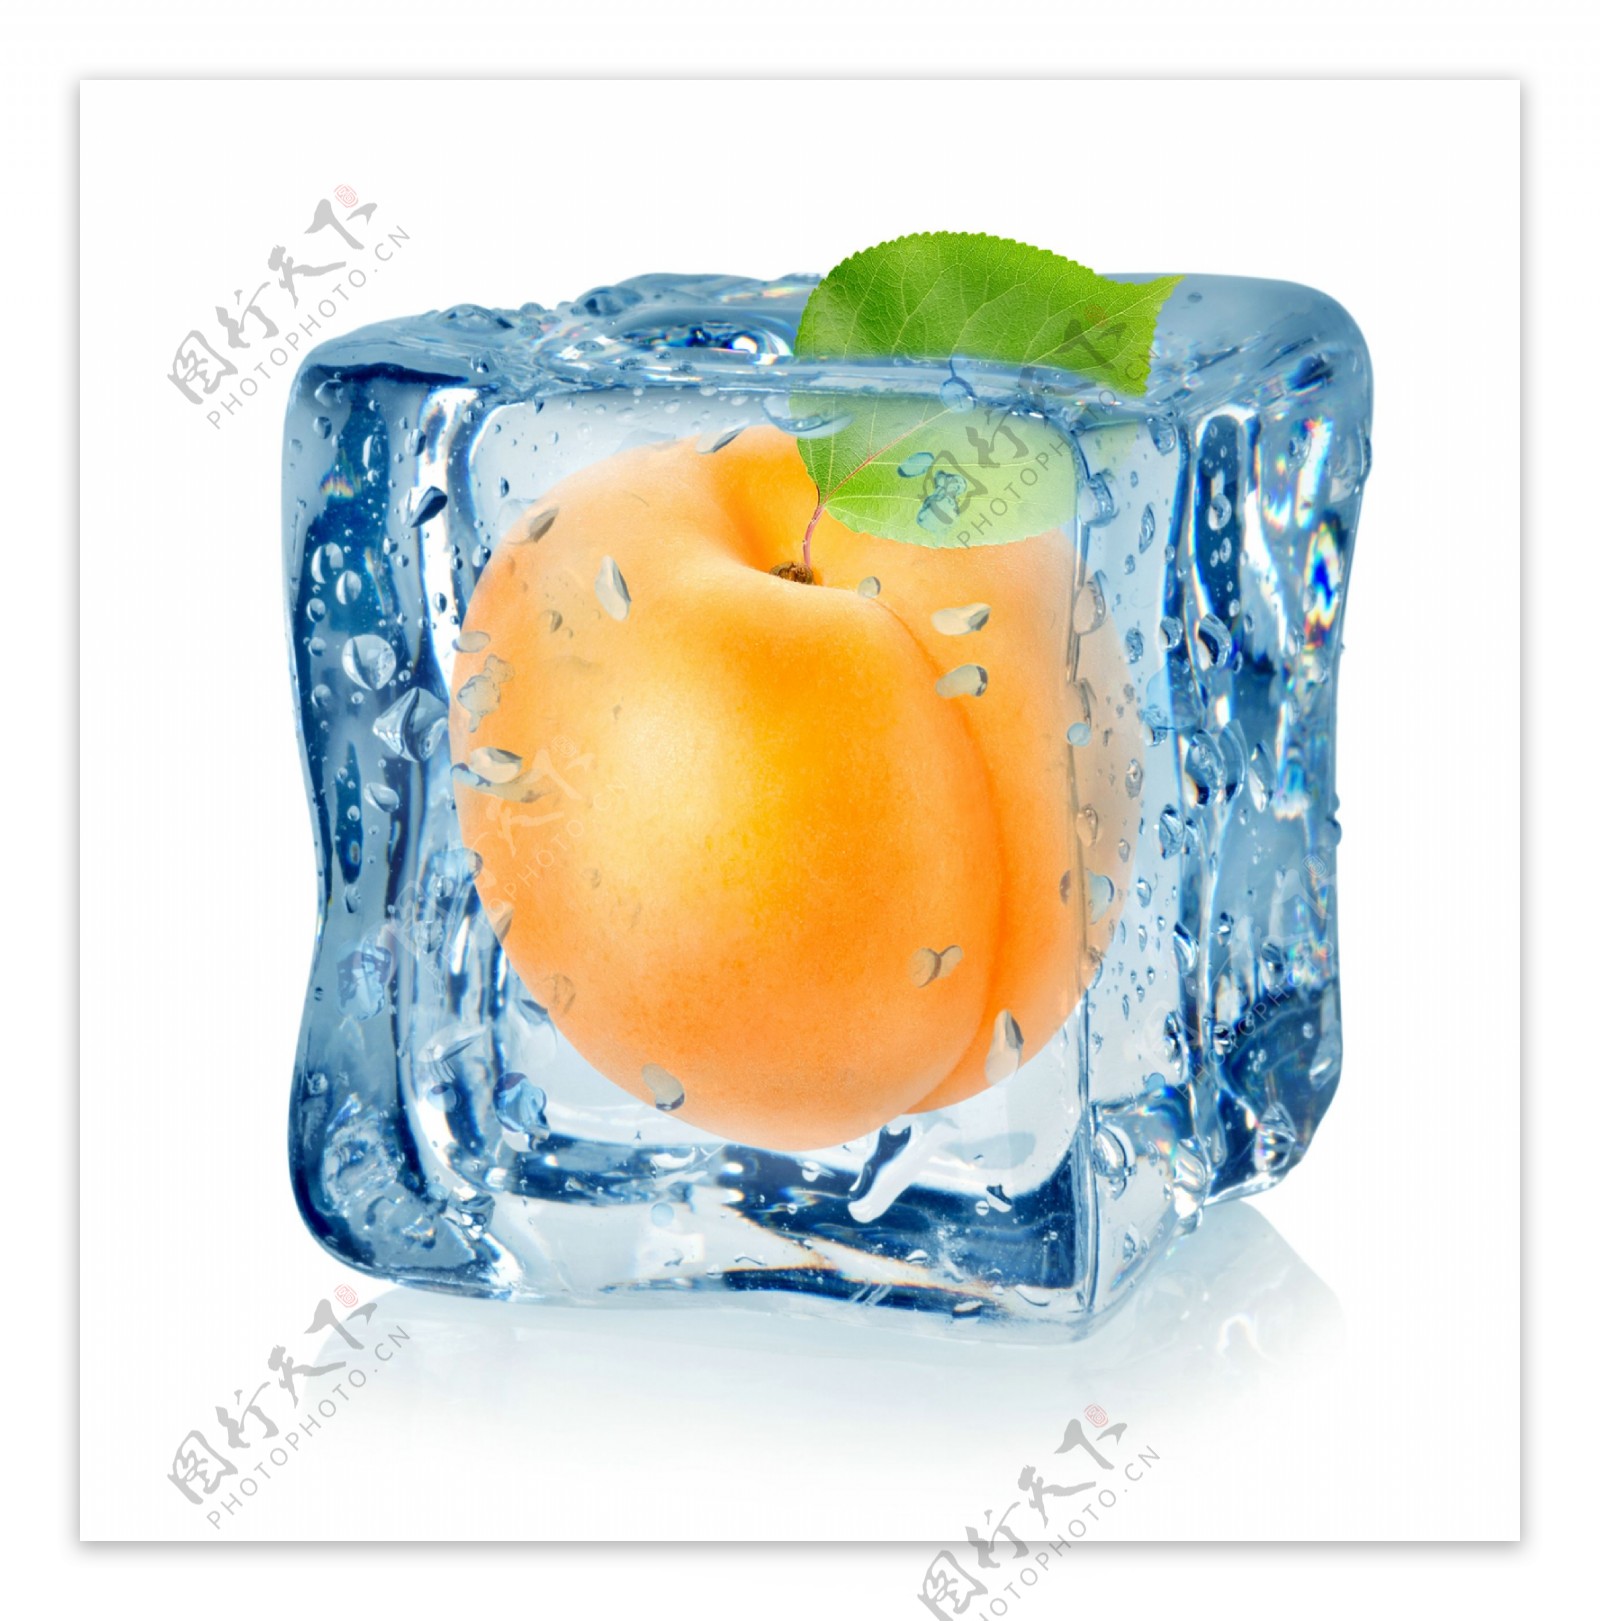 冰块里的黄桃图片